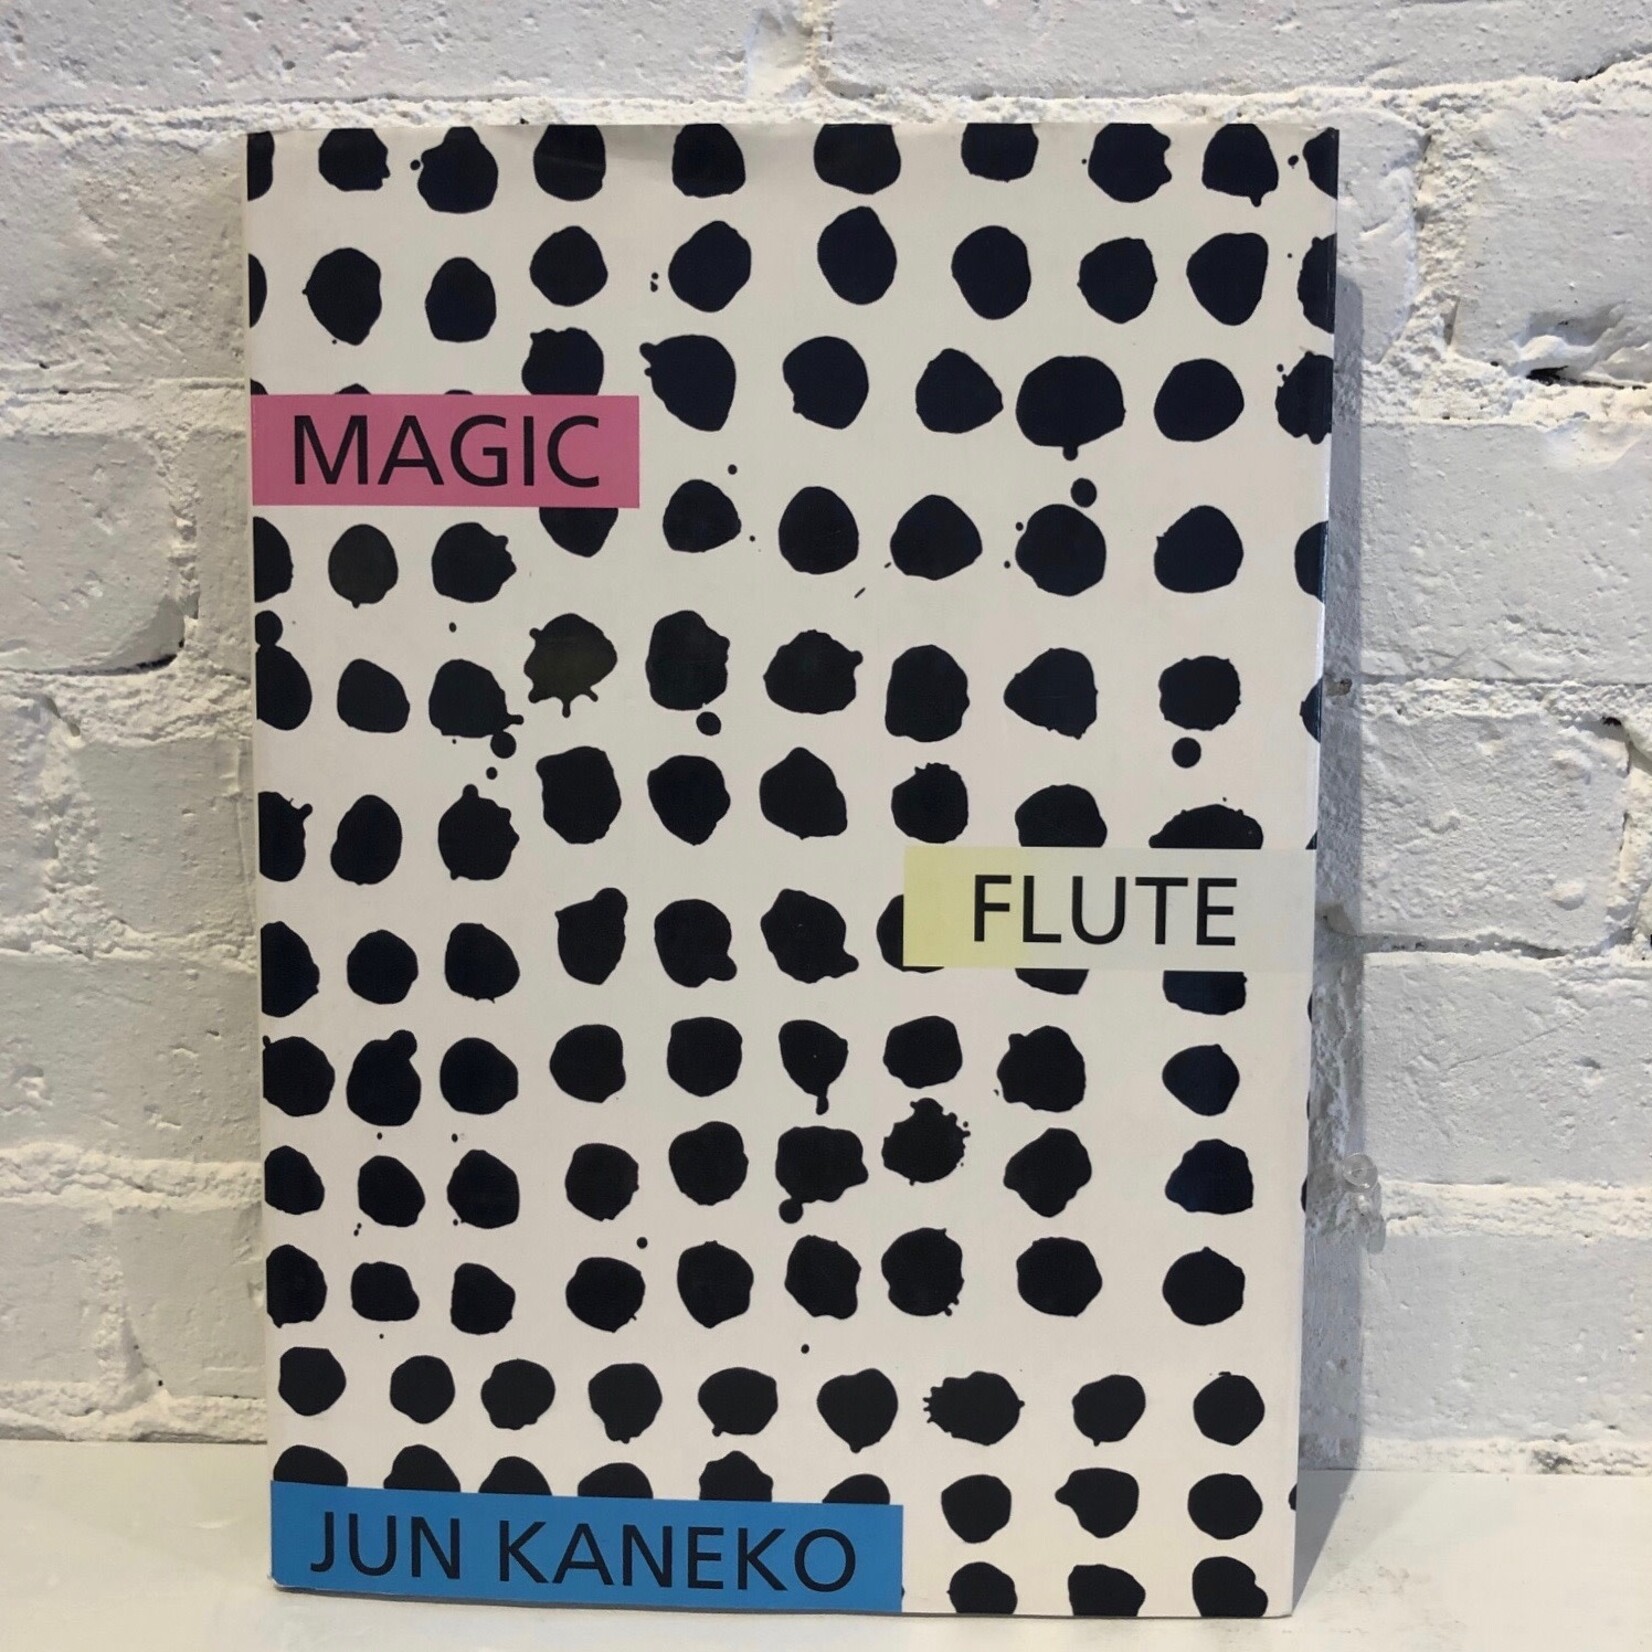 Magic Flute by Jun Kaneko